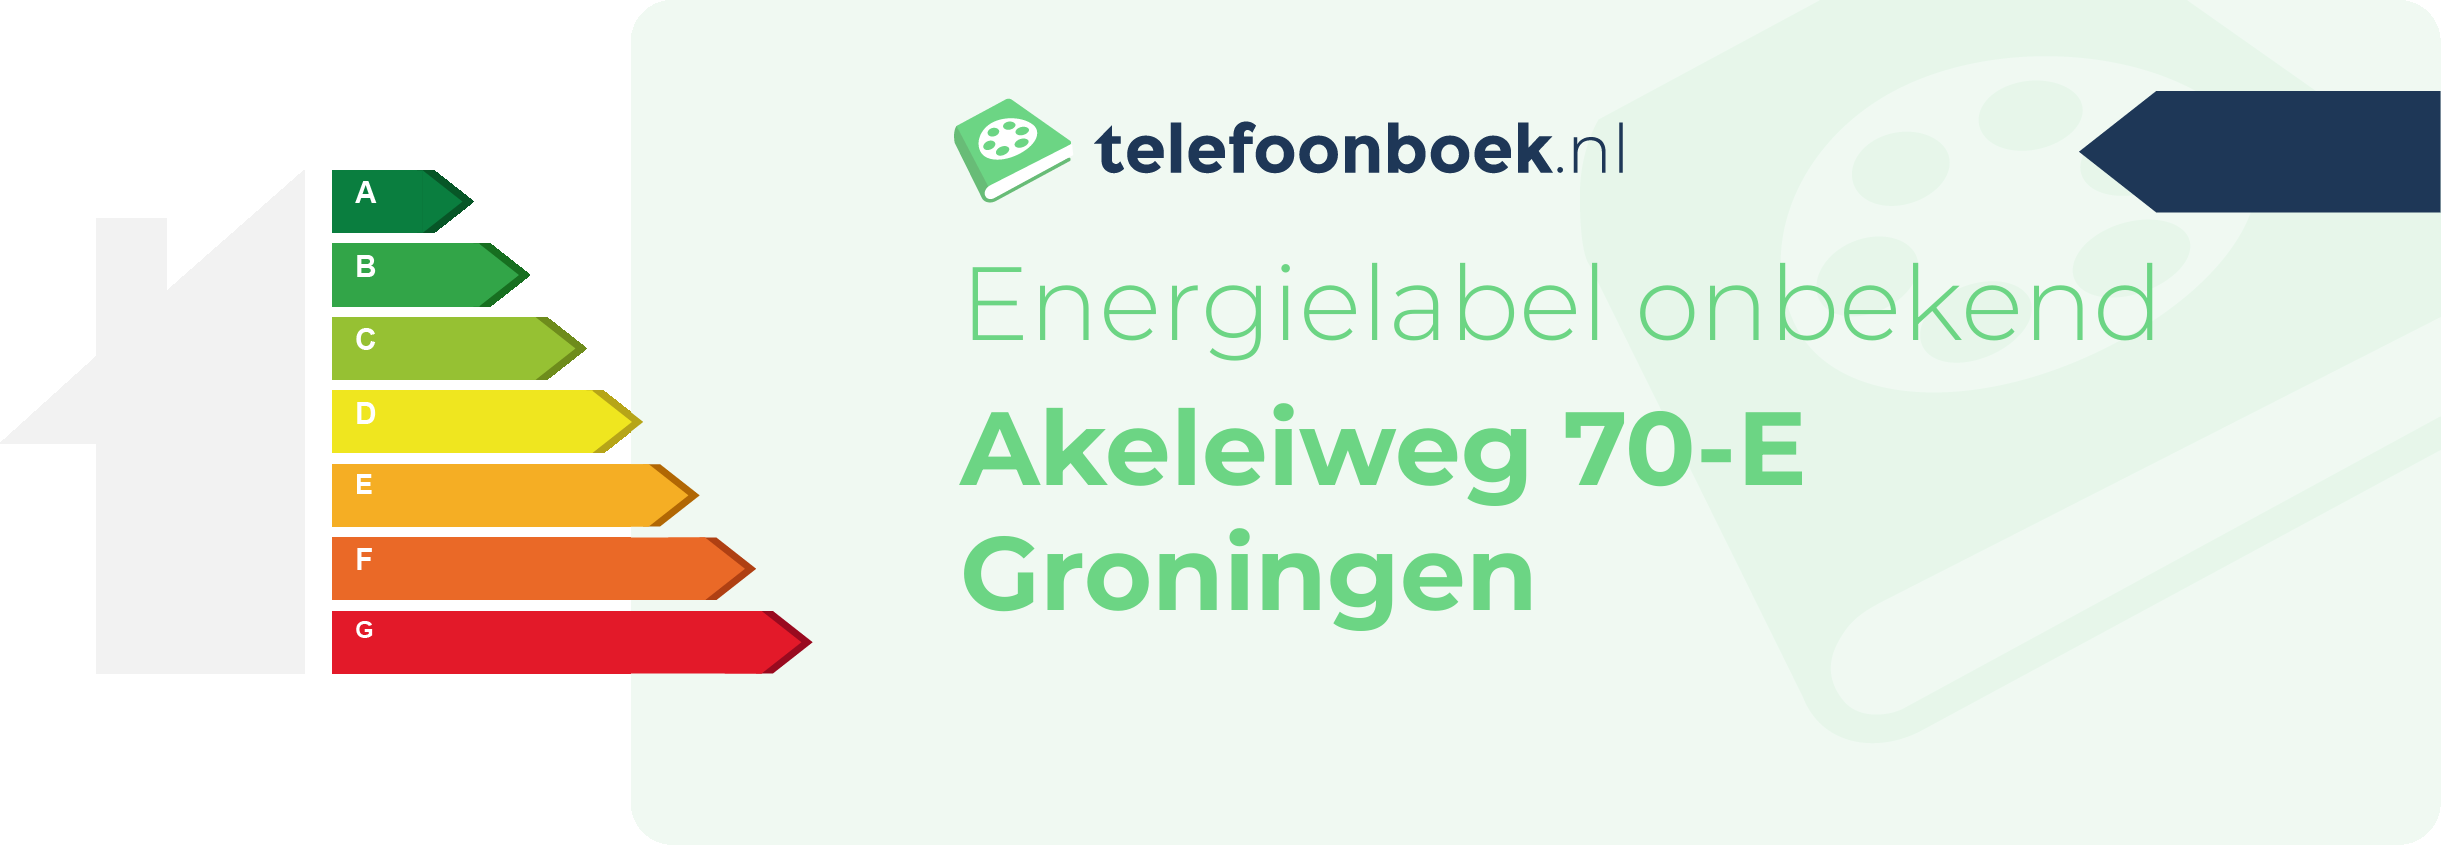 Energielabel Akeleiweg 70-E Groningen